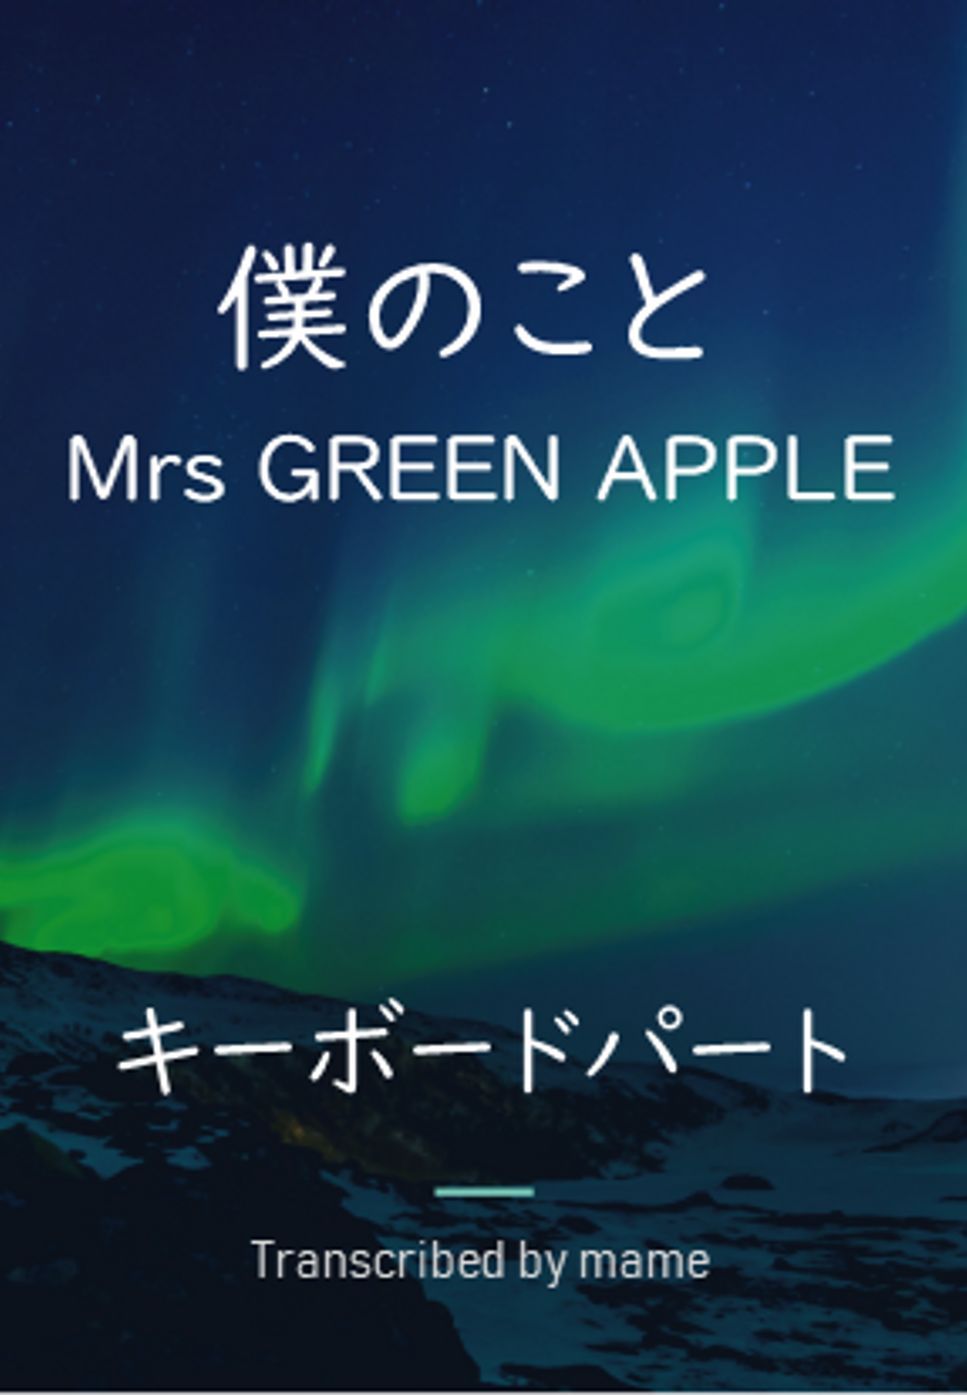 Mrs GREEN APPLE - 僕のこと (ピアノパート) by mame